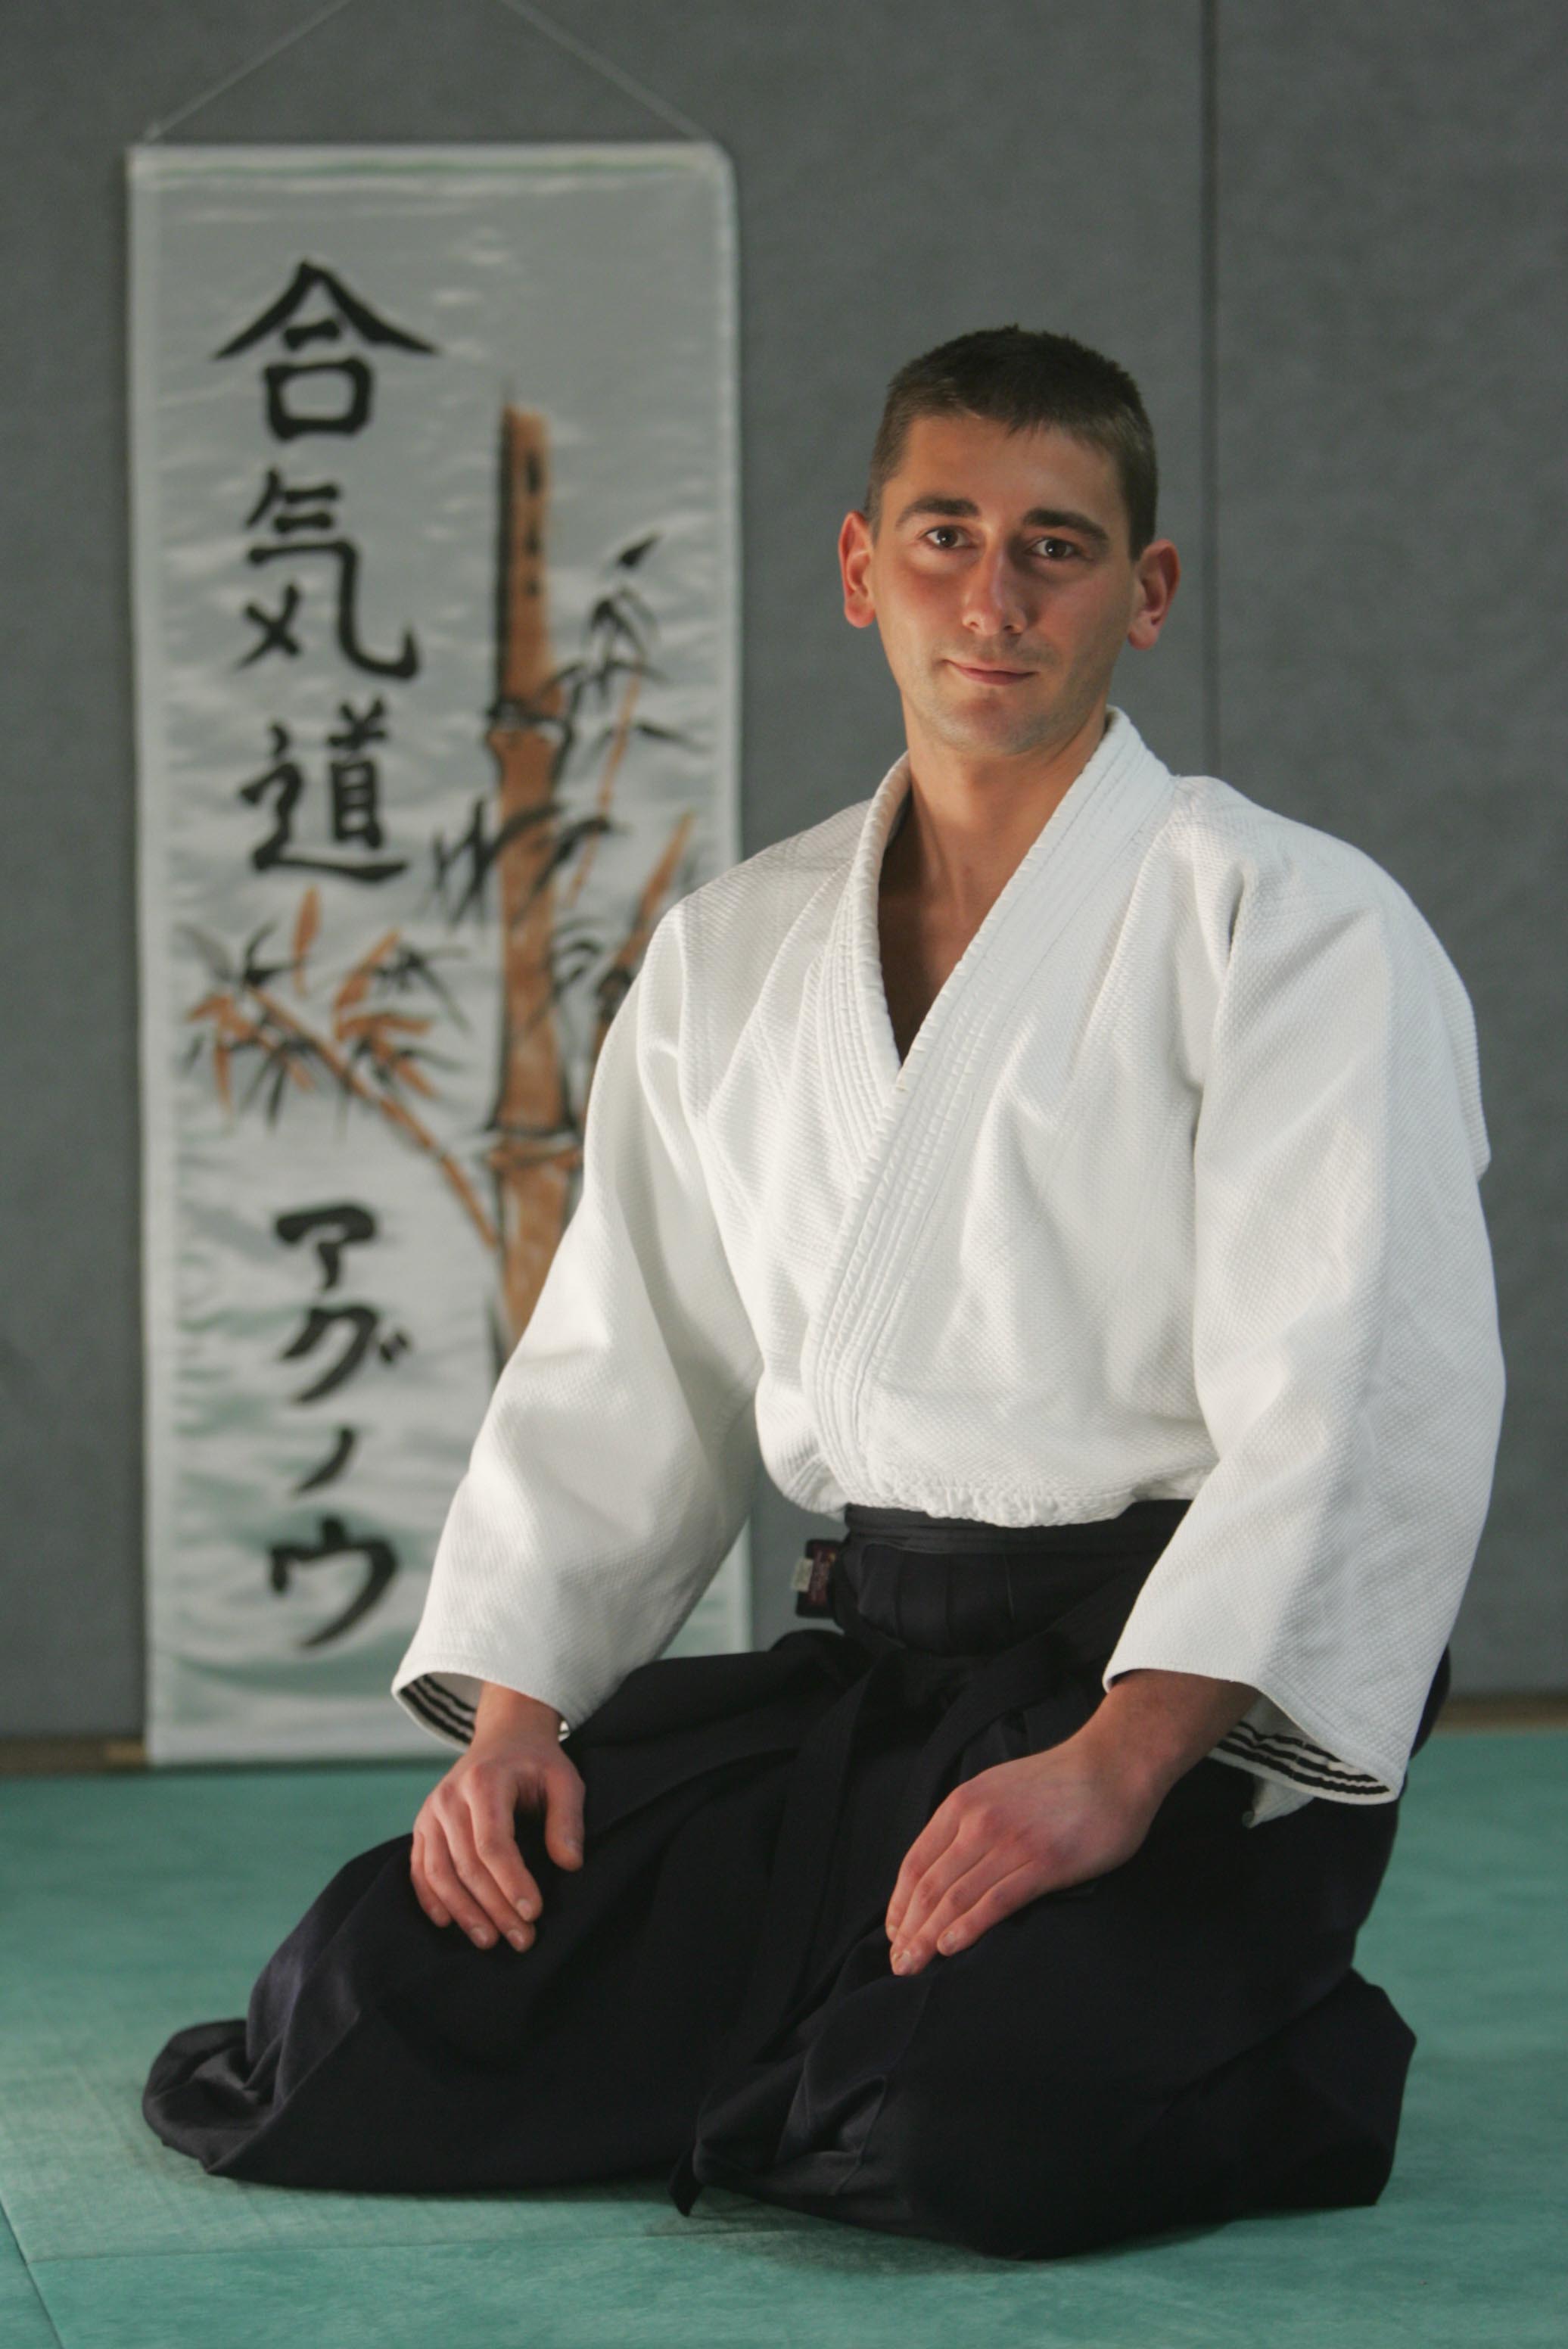 Président de l'Aïkido Club de Haguenau Jérôme Weibel